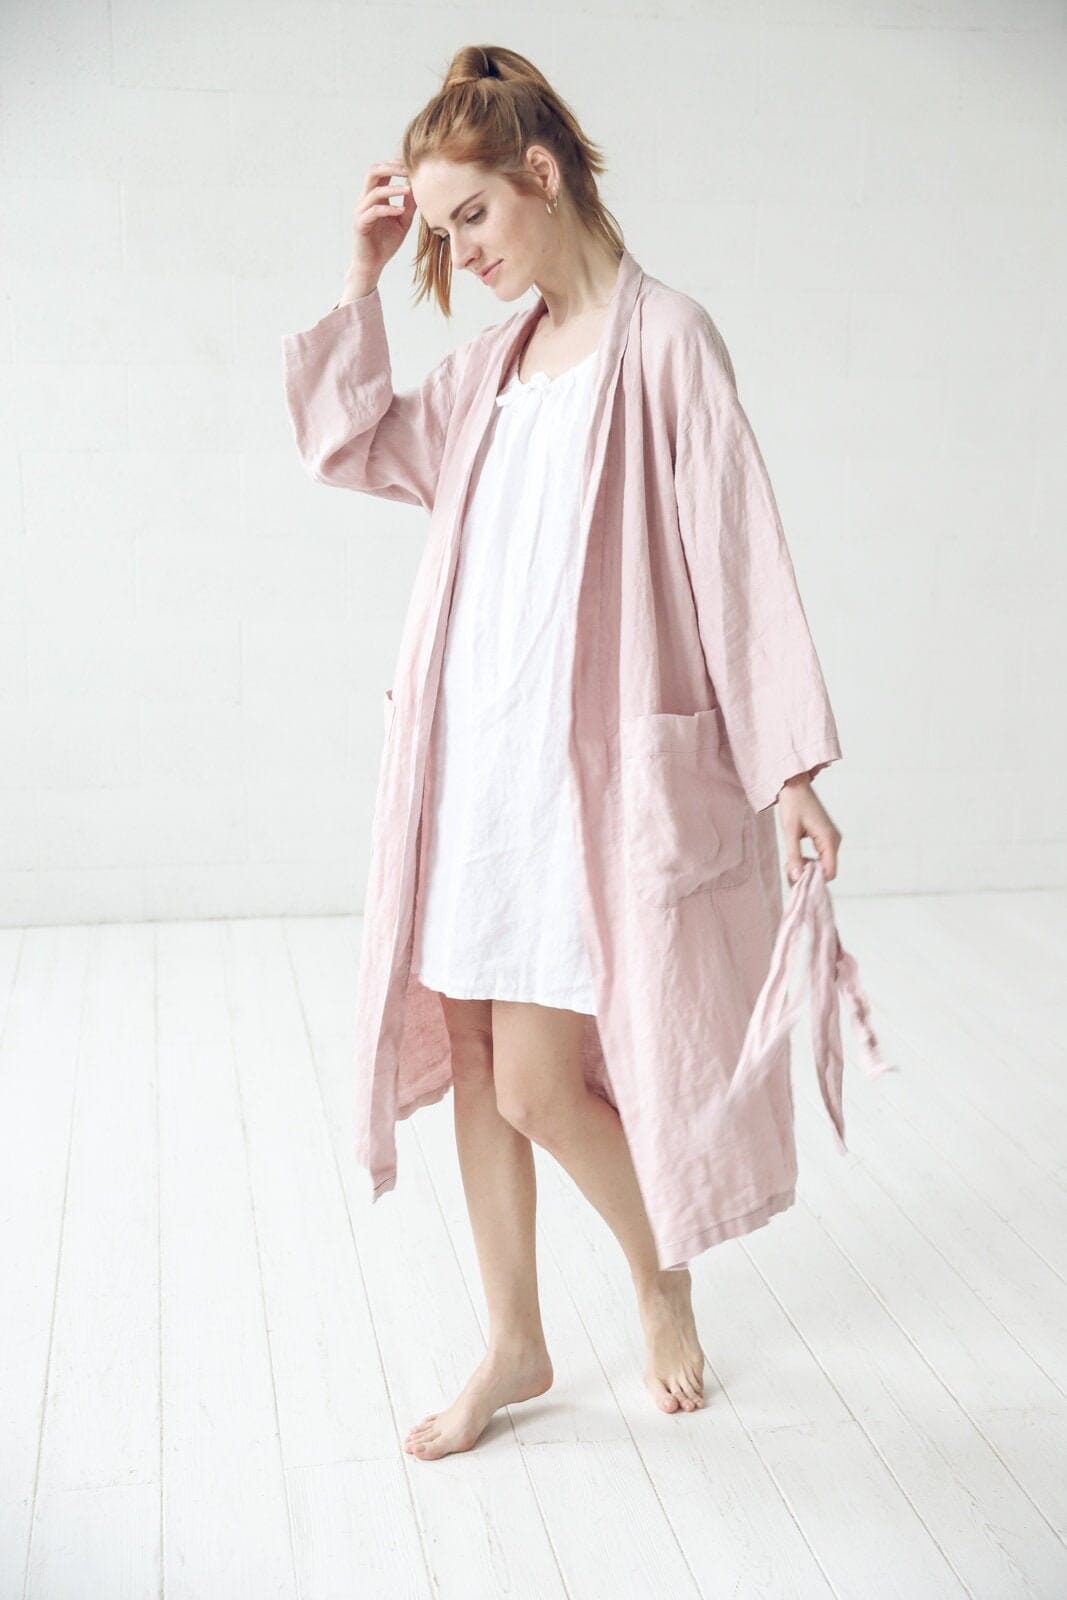 https://oldlinenmill.com/cdn/shop/files/romantic-linen-sleepwear-gift-idea-old-linen-mill-37743406448857.jpg?v=1699471139